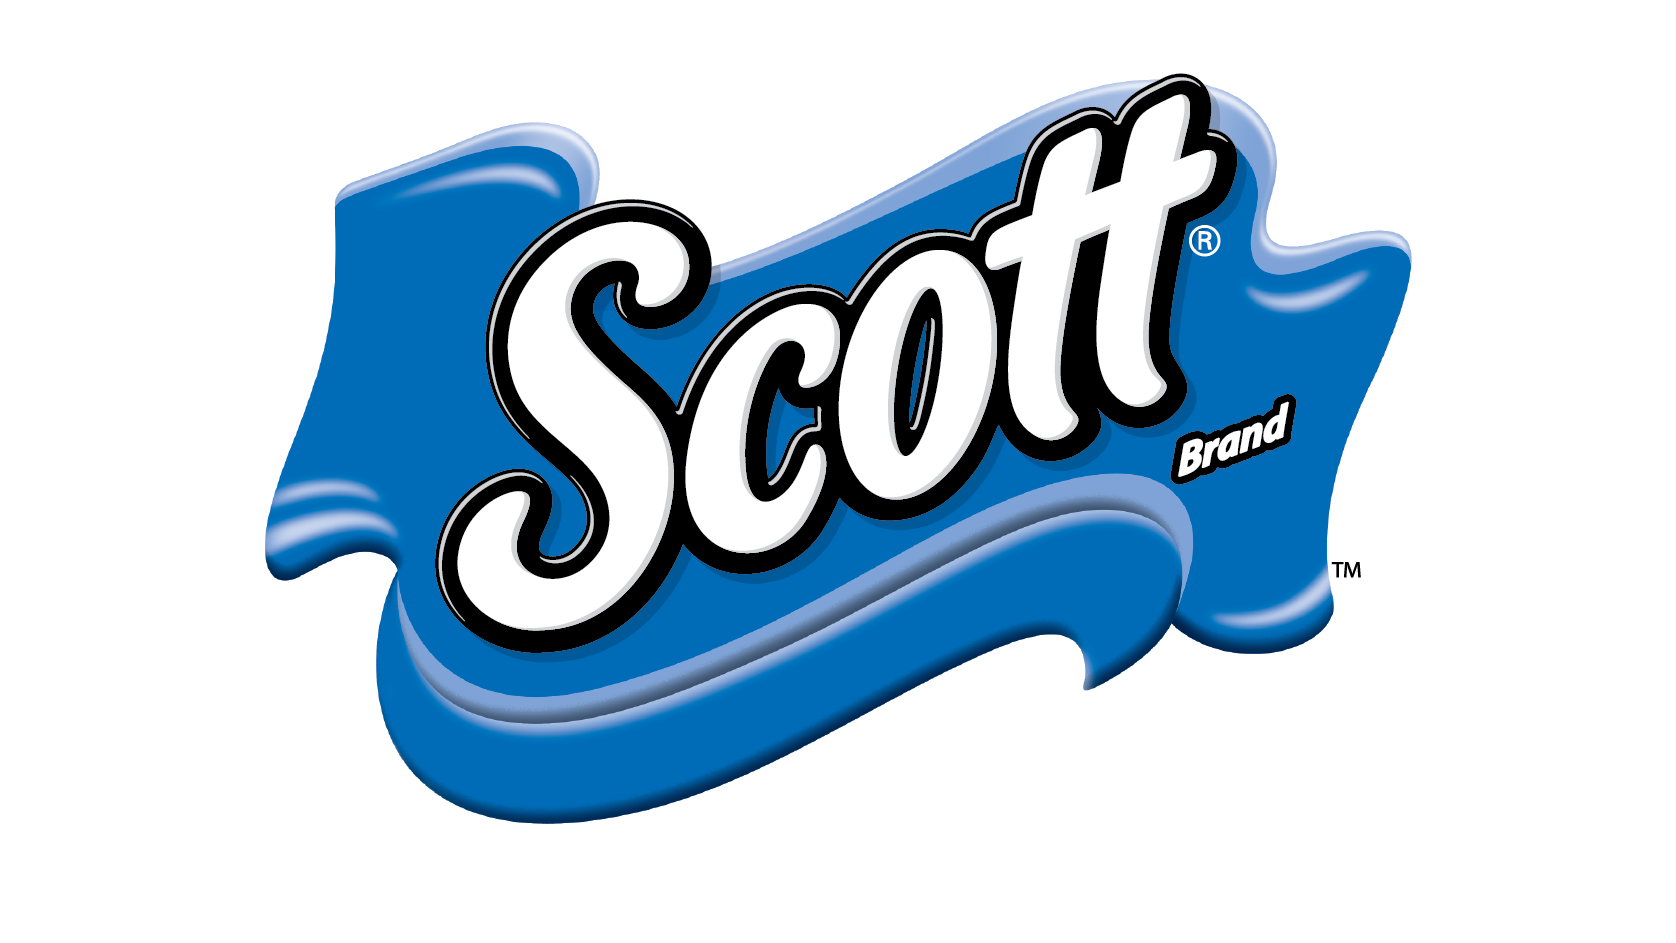 Scott Brand Bath Tissue Logo